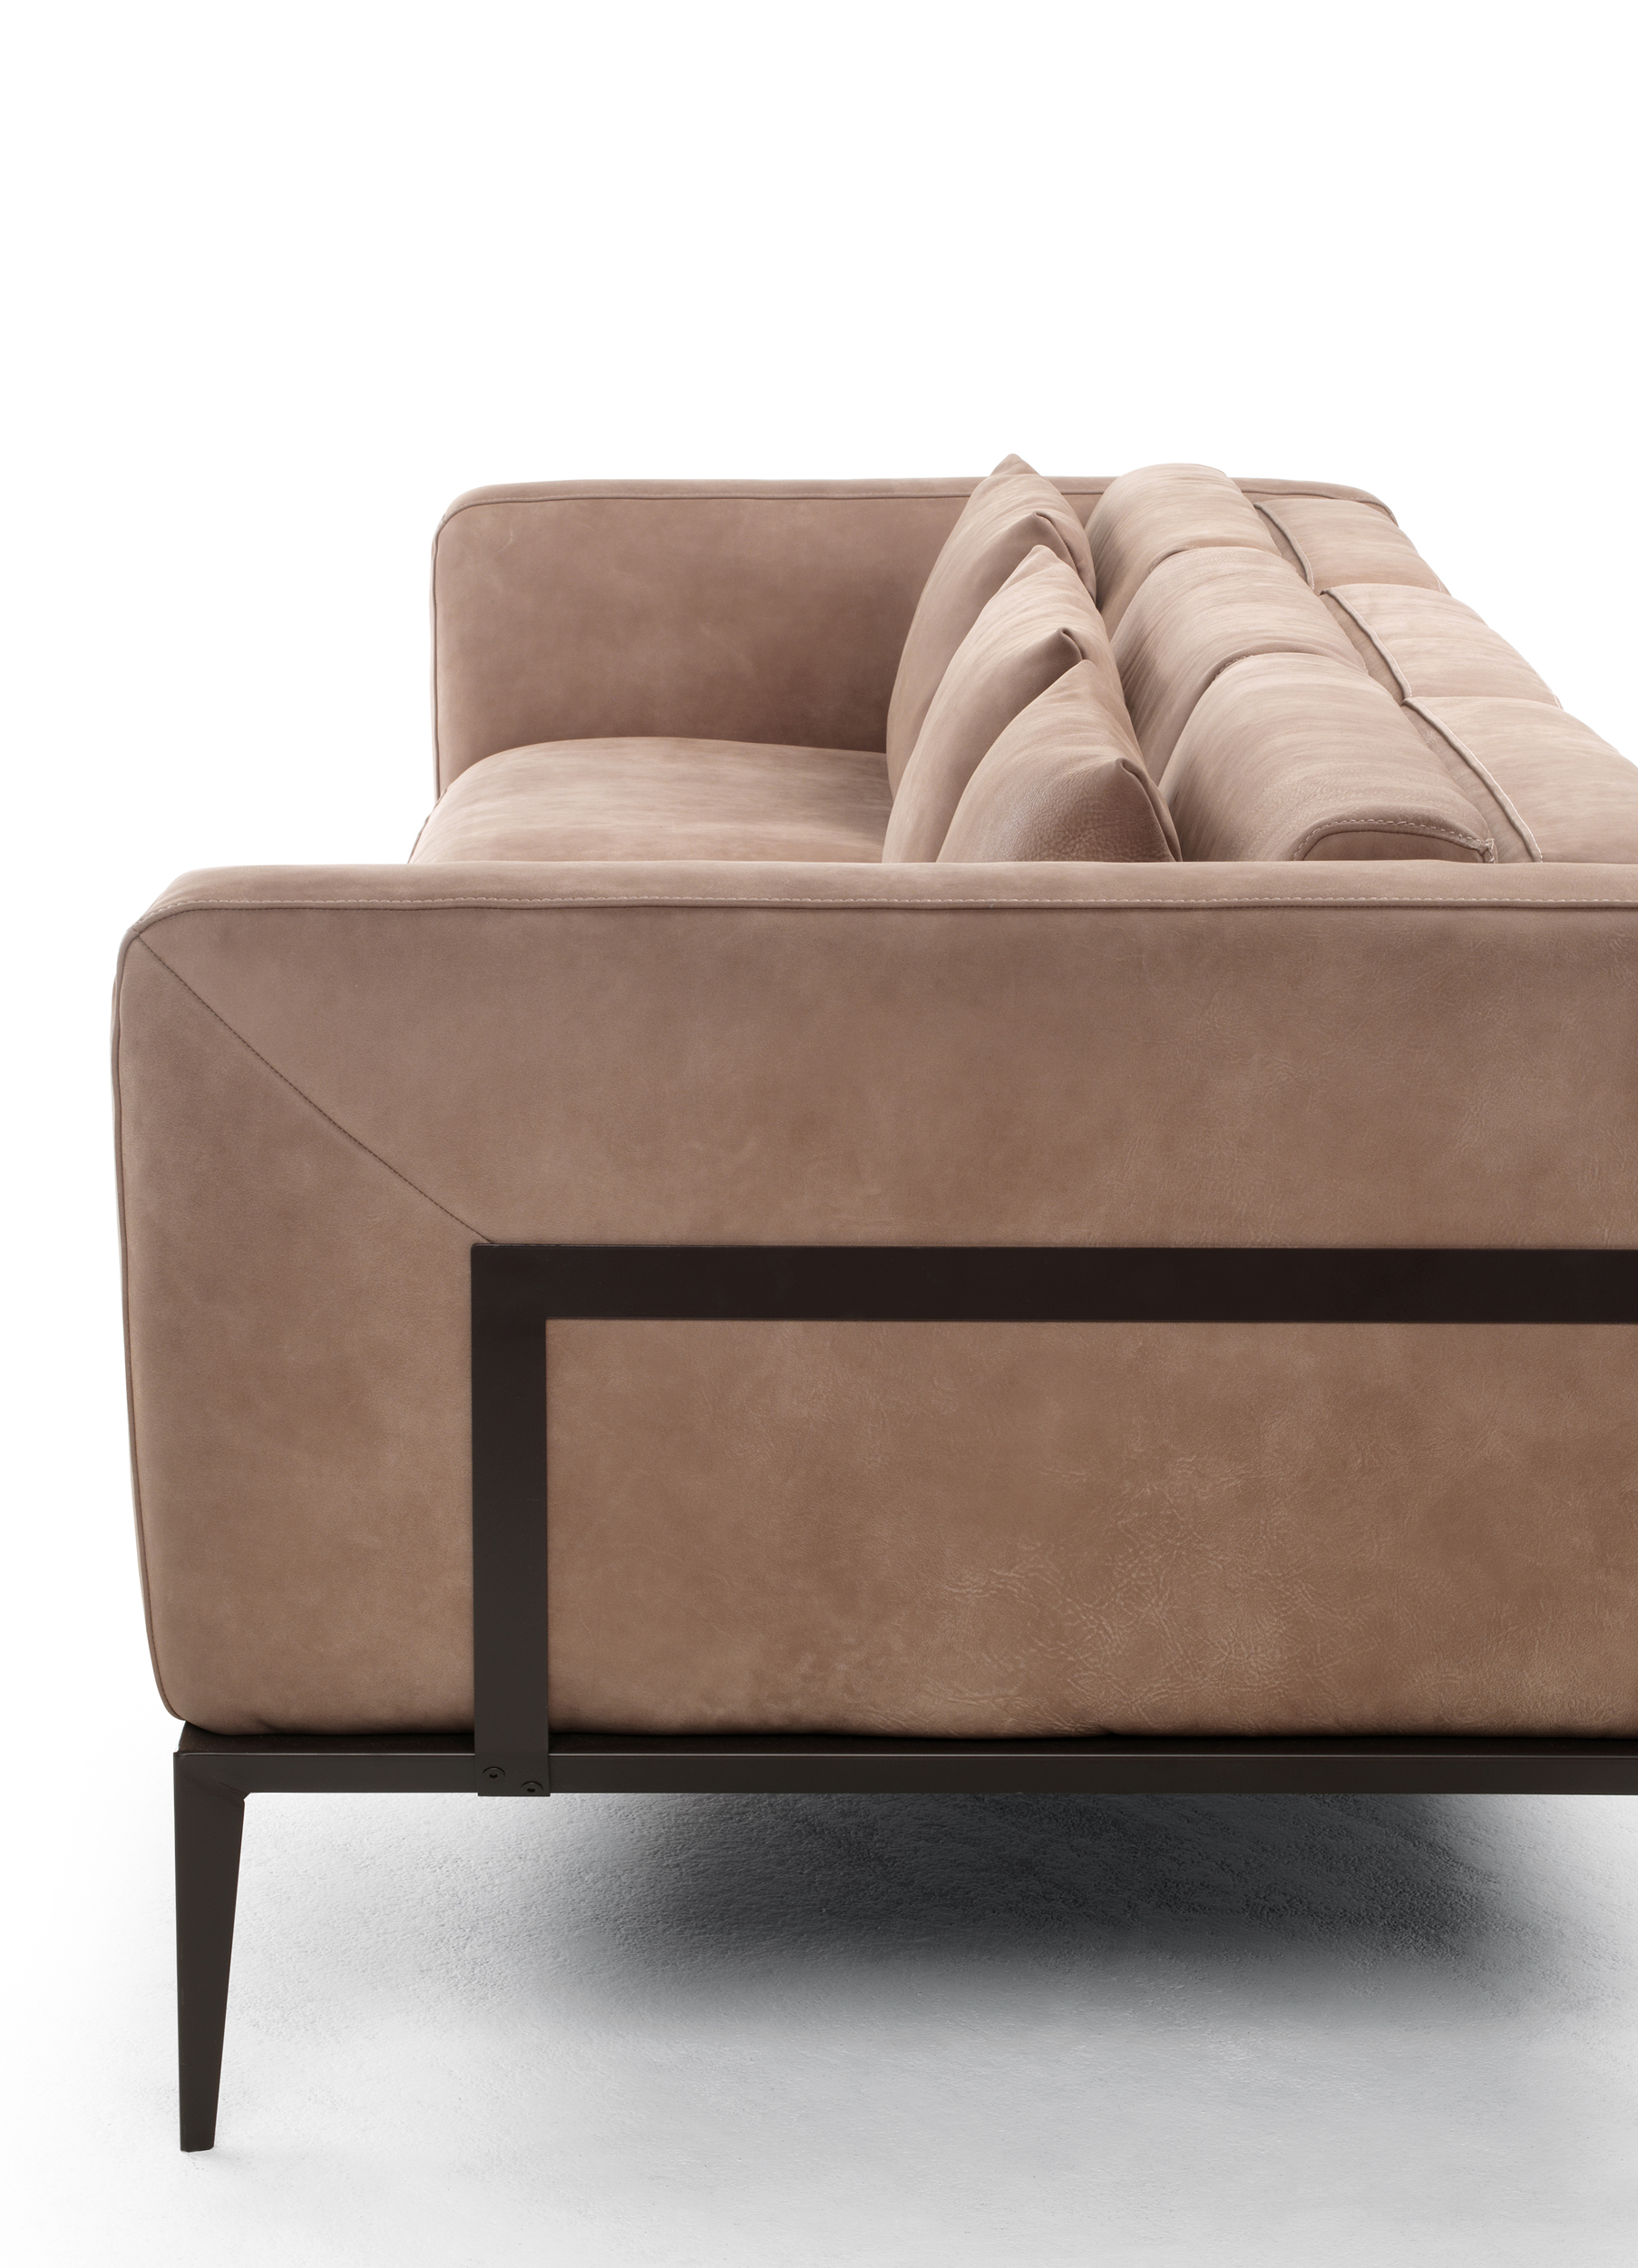 Two Pieced Italian Leather Sofa Set in Tan